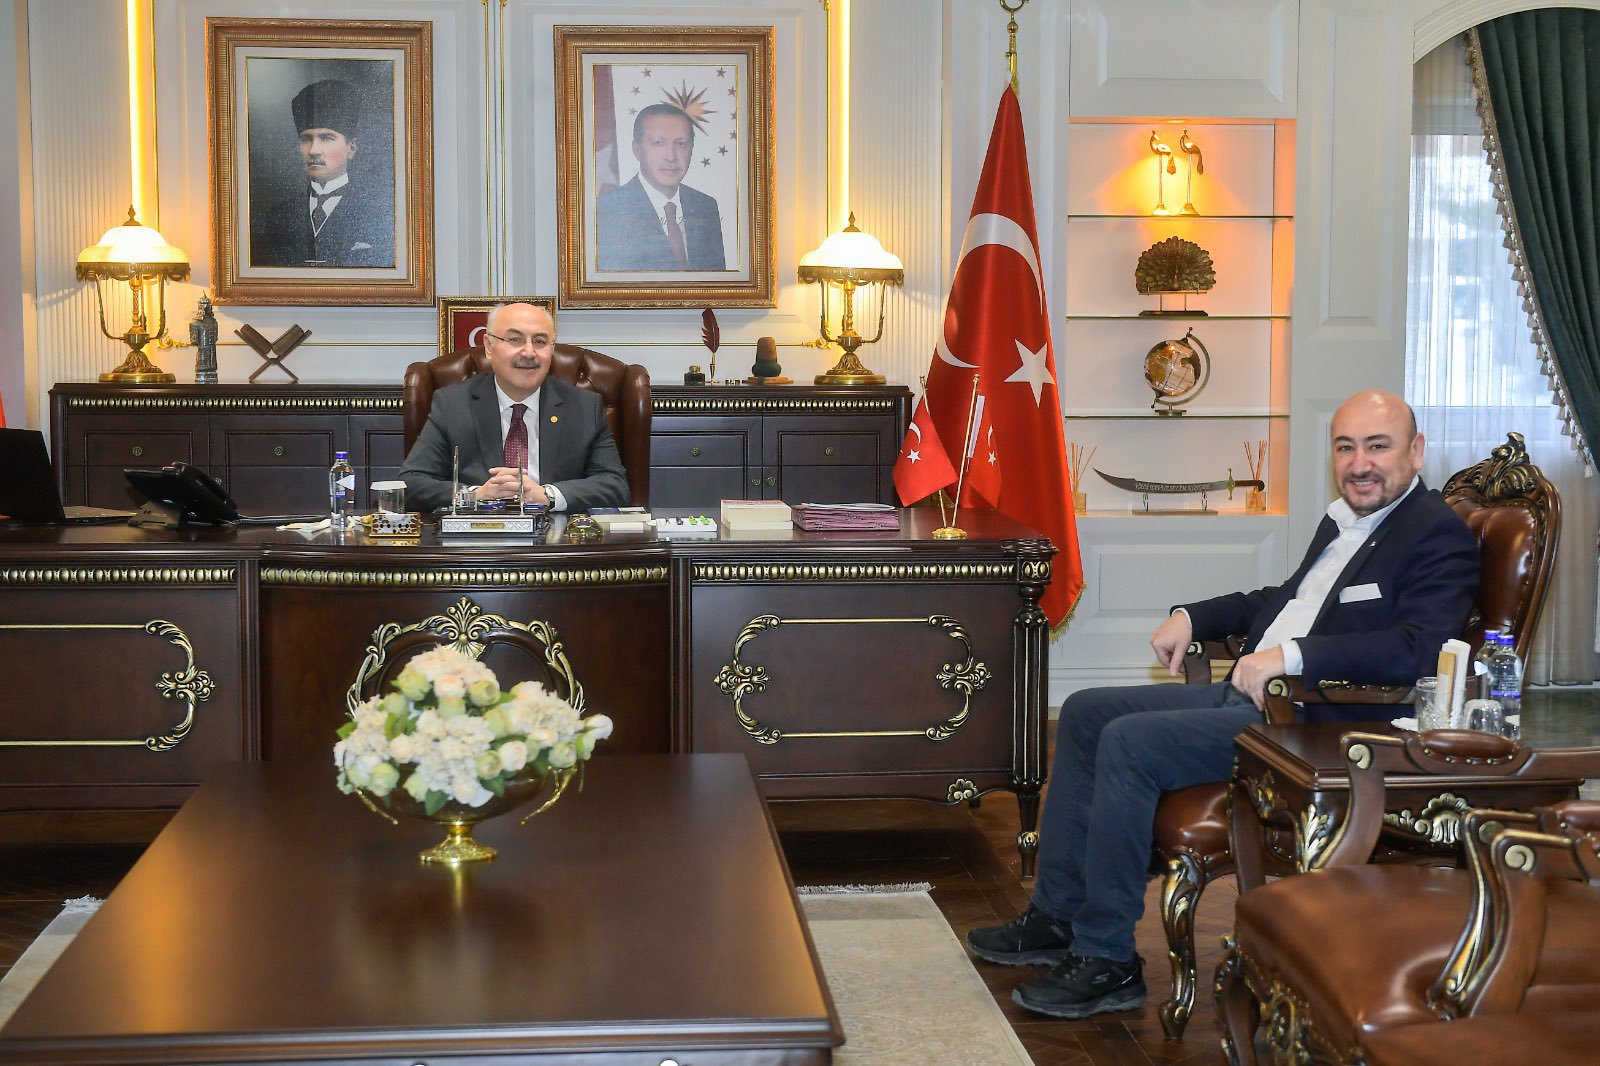 TOBB Yönetim Kurulu Üyesi ve Odamız Başkanı Hakan Ülken, Aydın Eski Valimiz Adana Valisi Sn. Yavuz Selim Köşger’i makamında ziyaret etti.